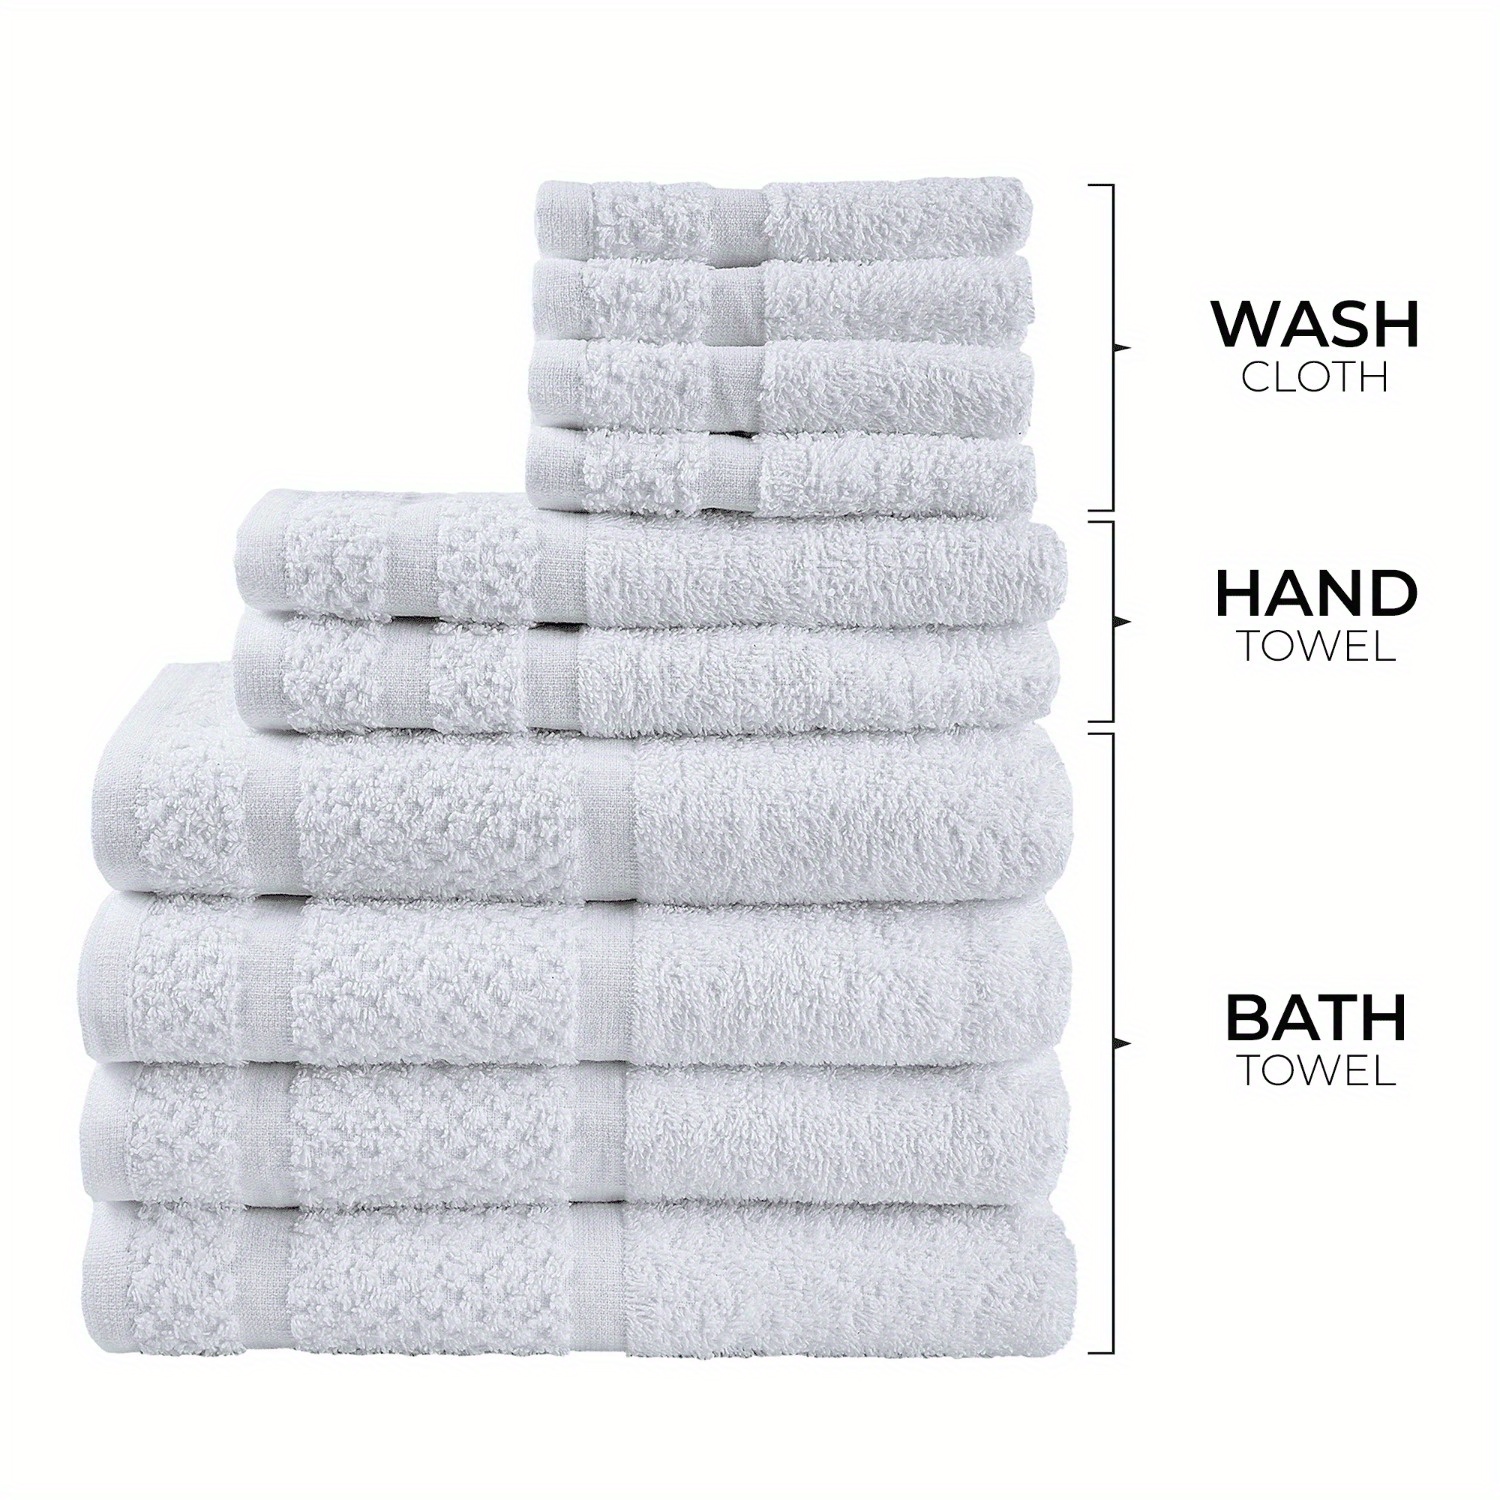 

10 Piece Bath Towel Set With Upgraded Softness & Durability, White